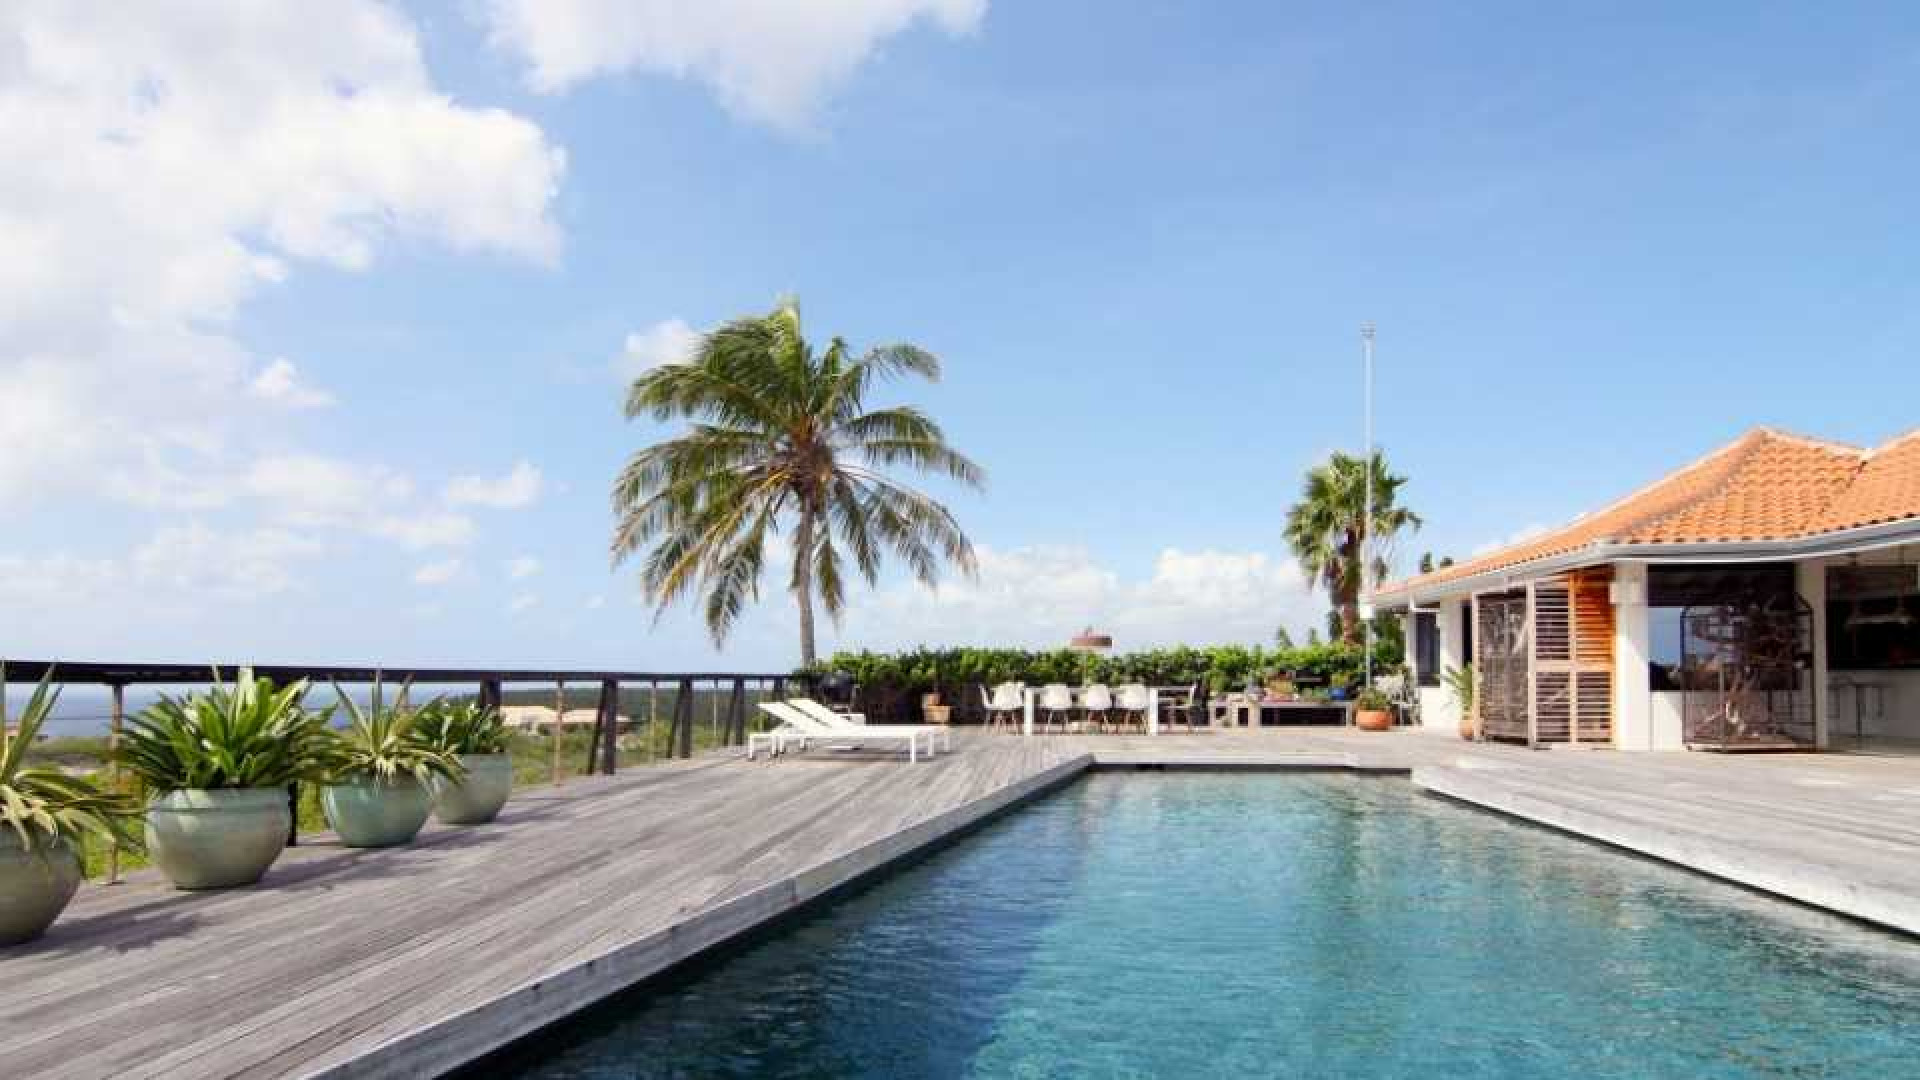 Barry Hay verlaagt vraagprijs van zijn miljoenen villa op Curacao. Zie foto's